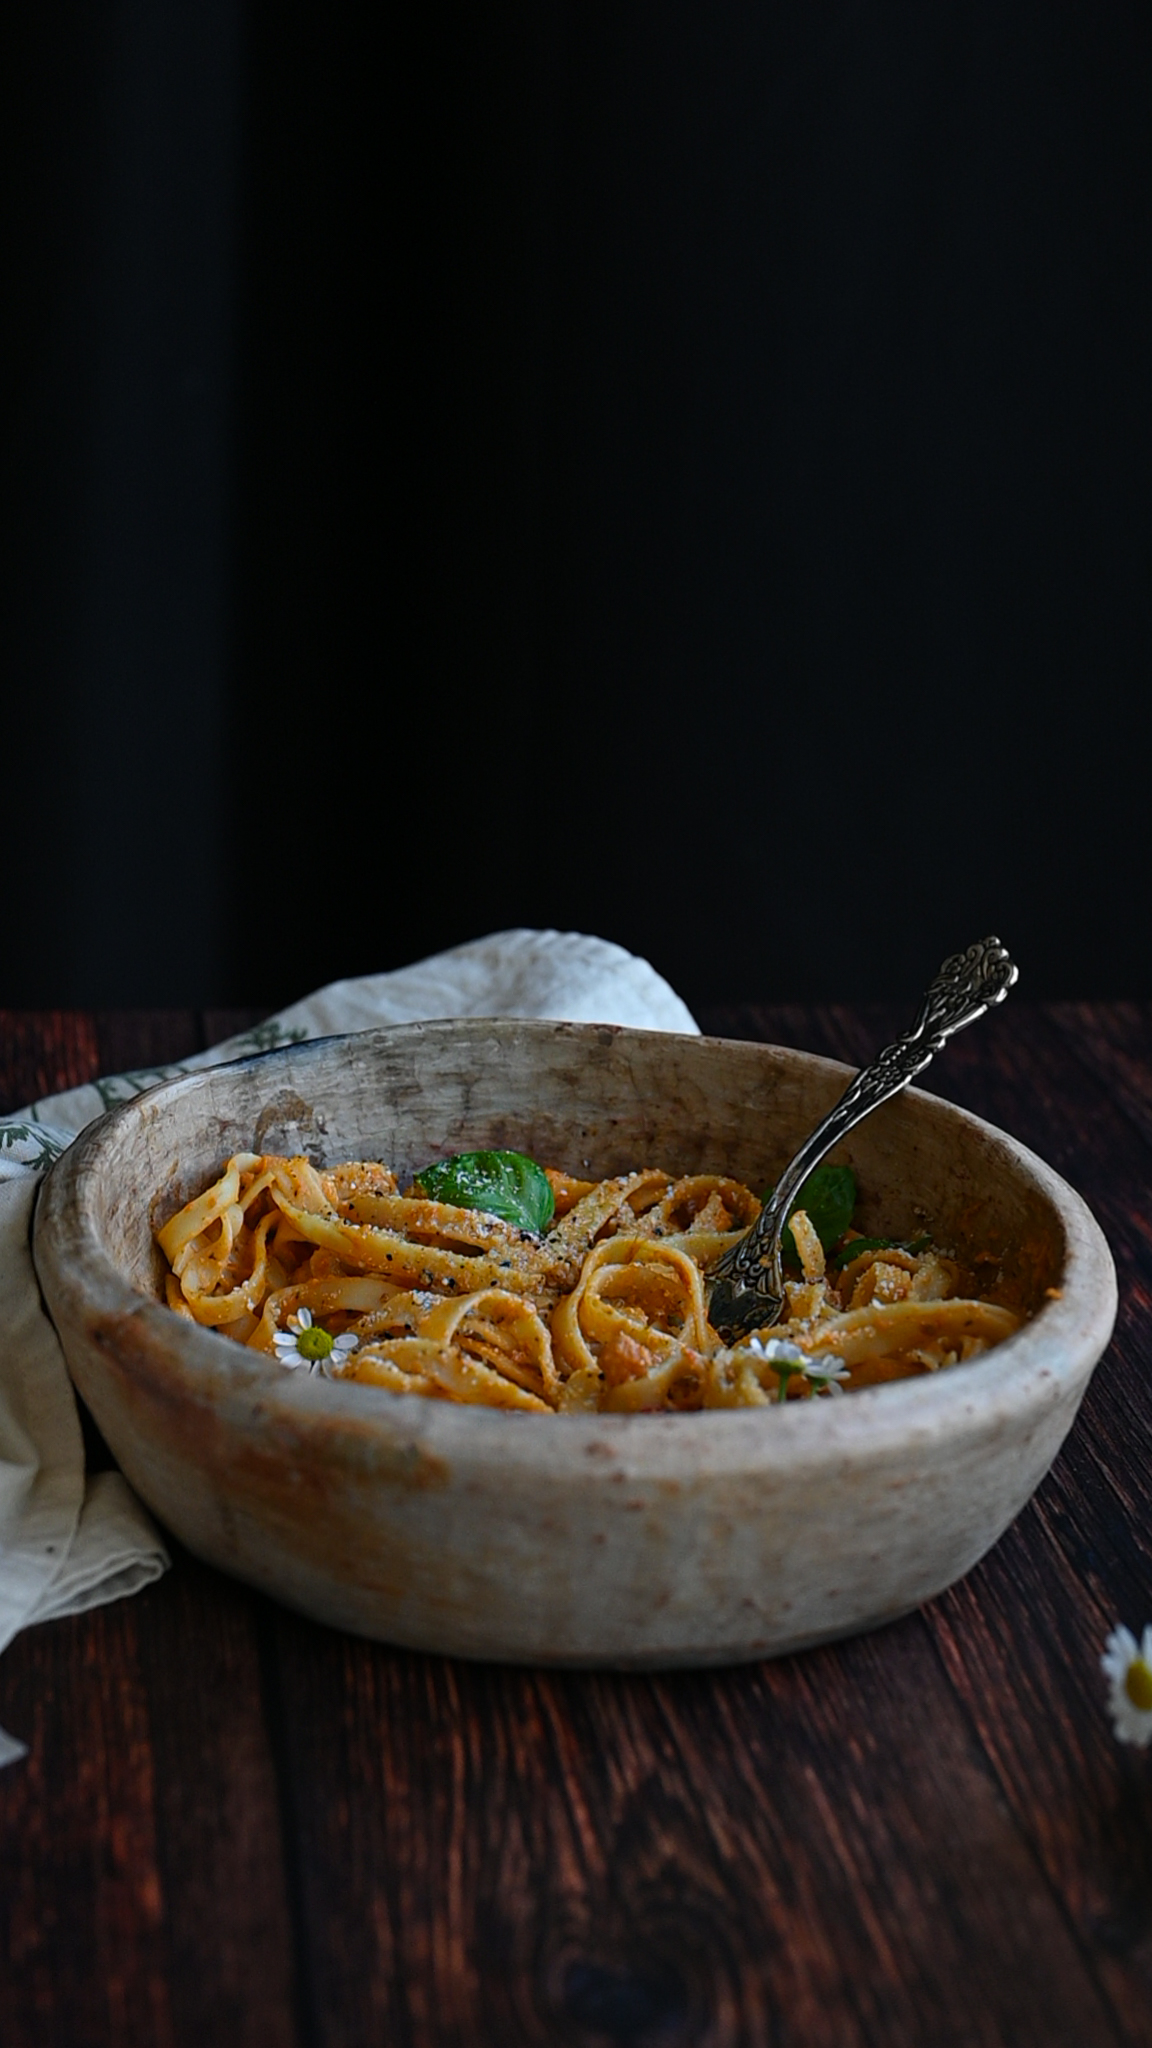 zucchin spaghetti sauce over pasta in a bowl